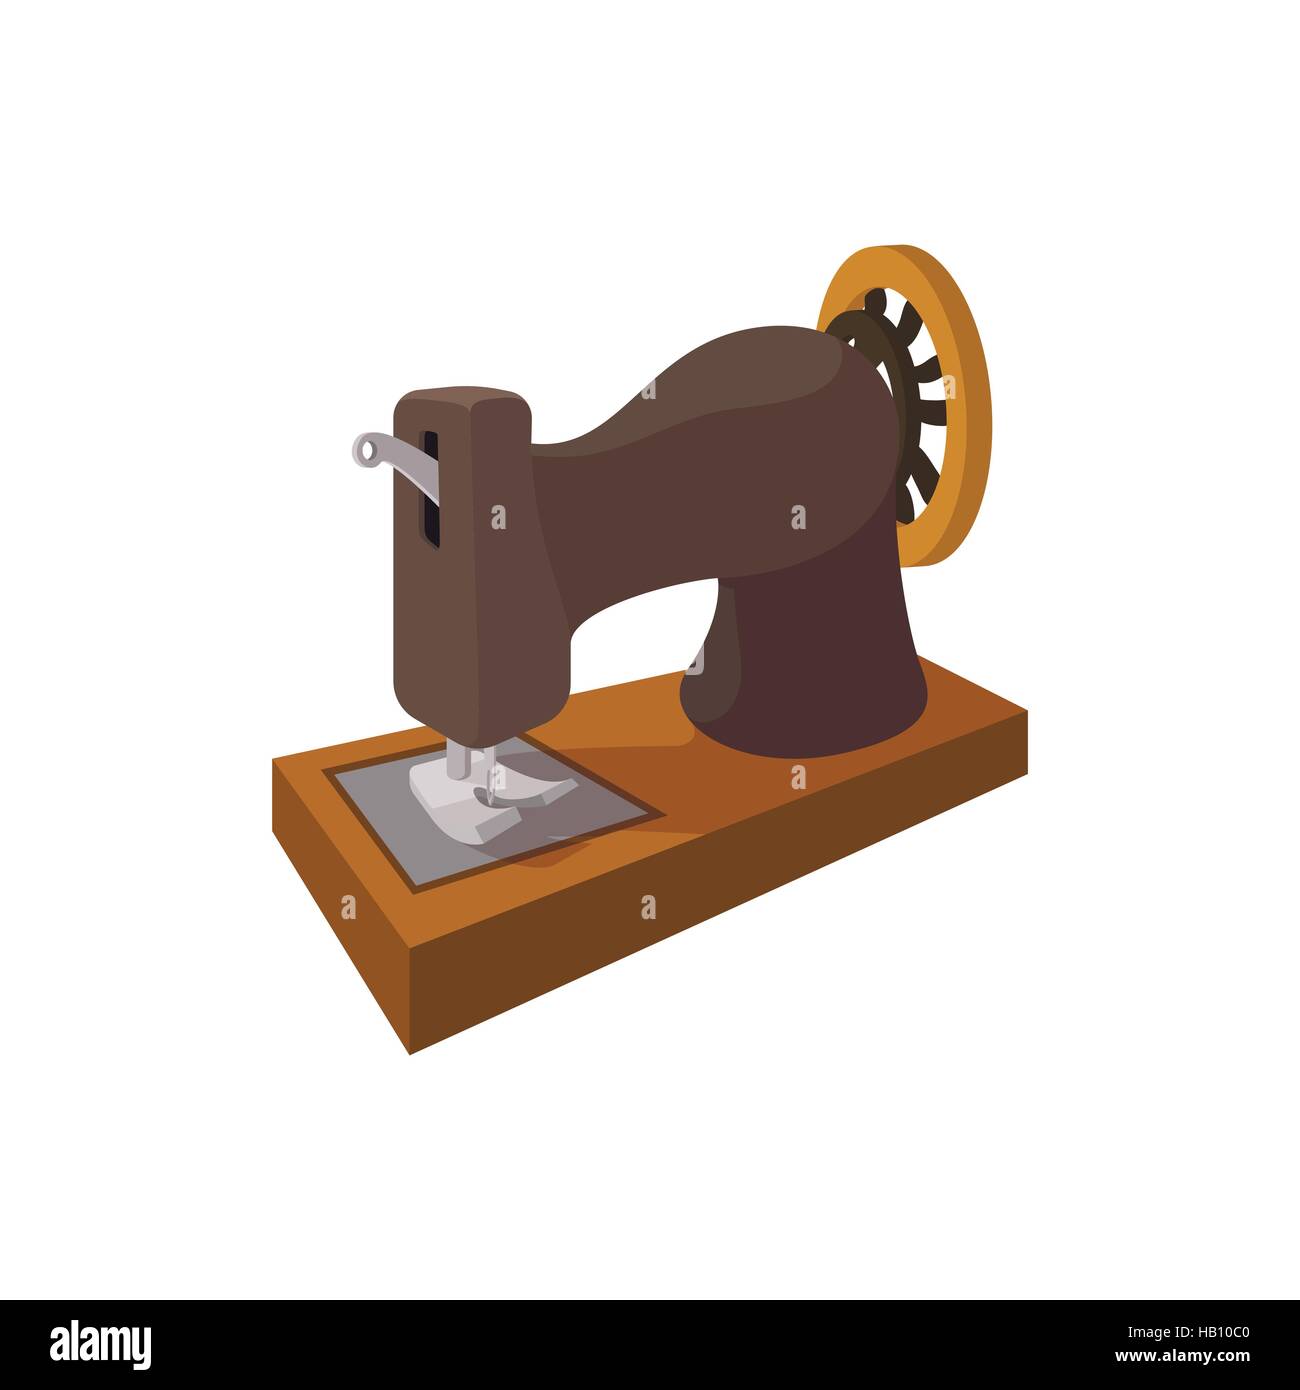 Ilustración de dibujos animados de maquina de coser